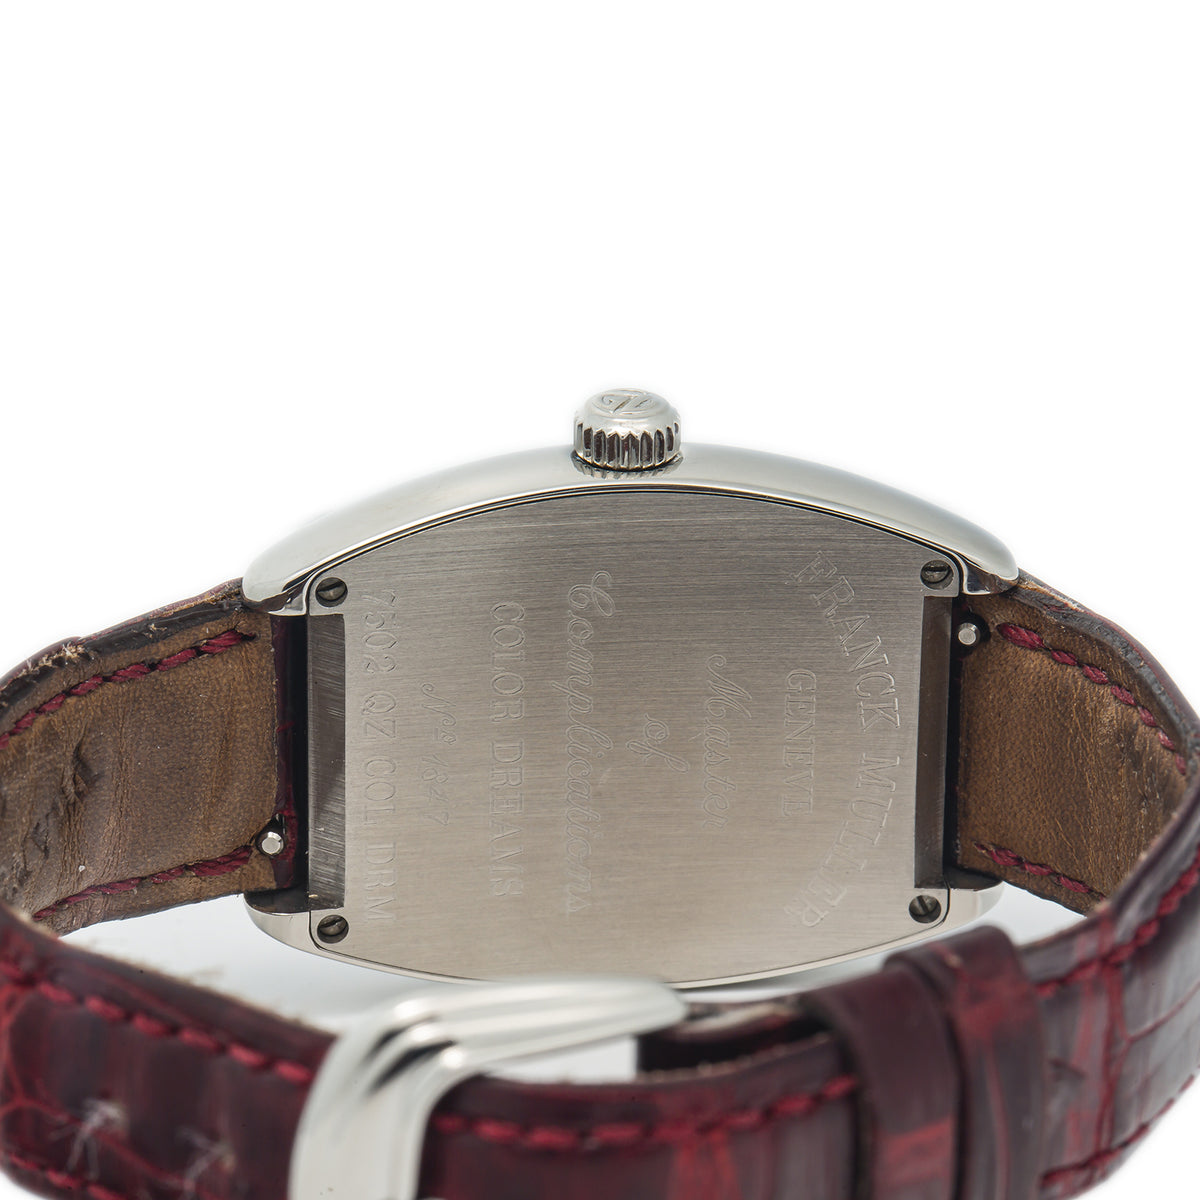 Franck Muller Color Dream 7502 Steel Burgundy Leather Quartz Watch 29mm